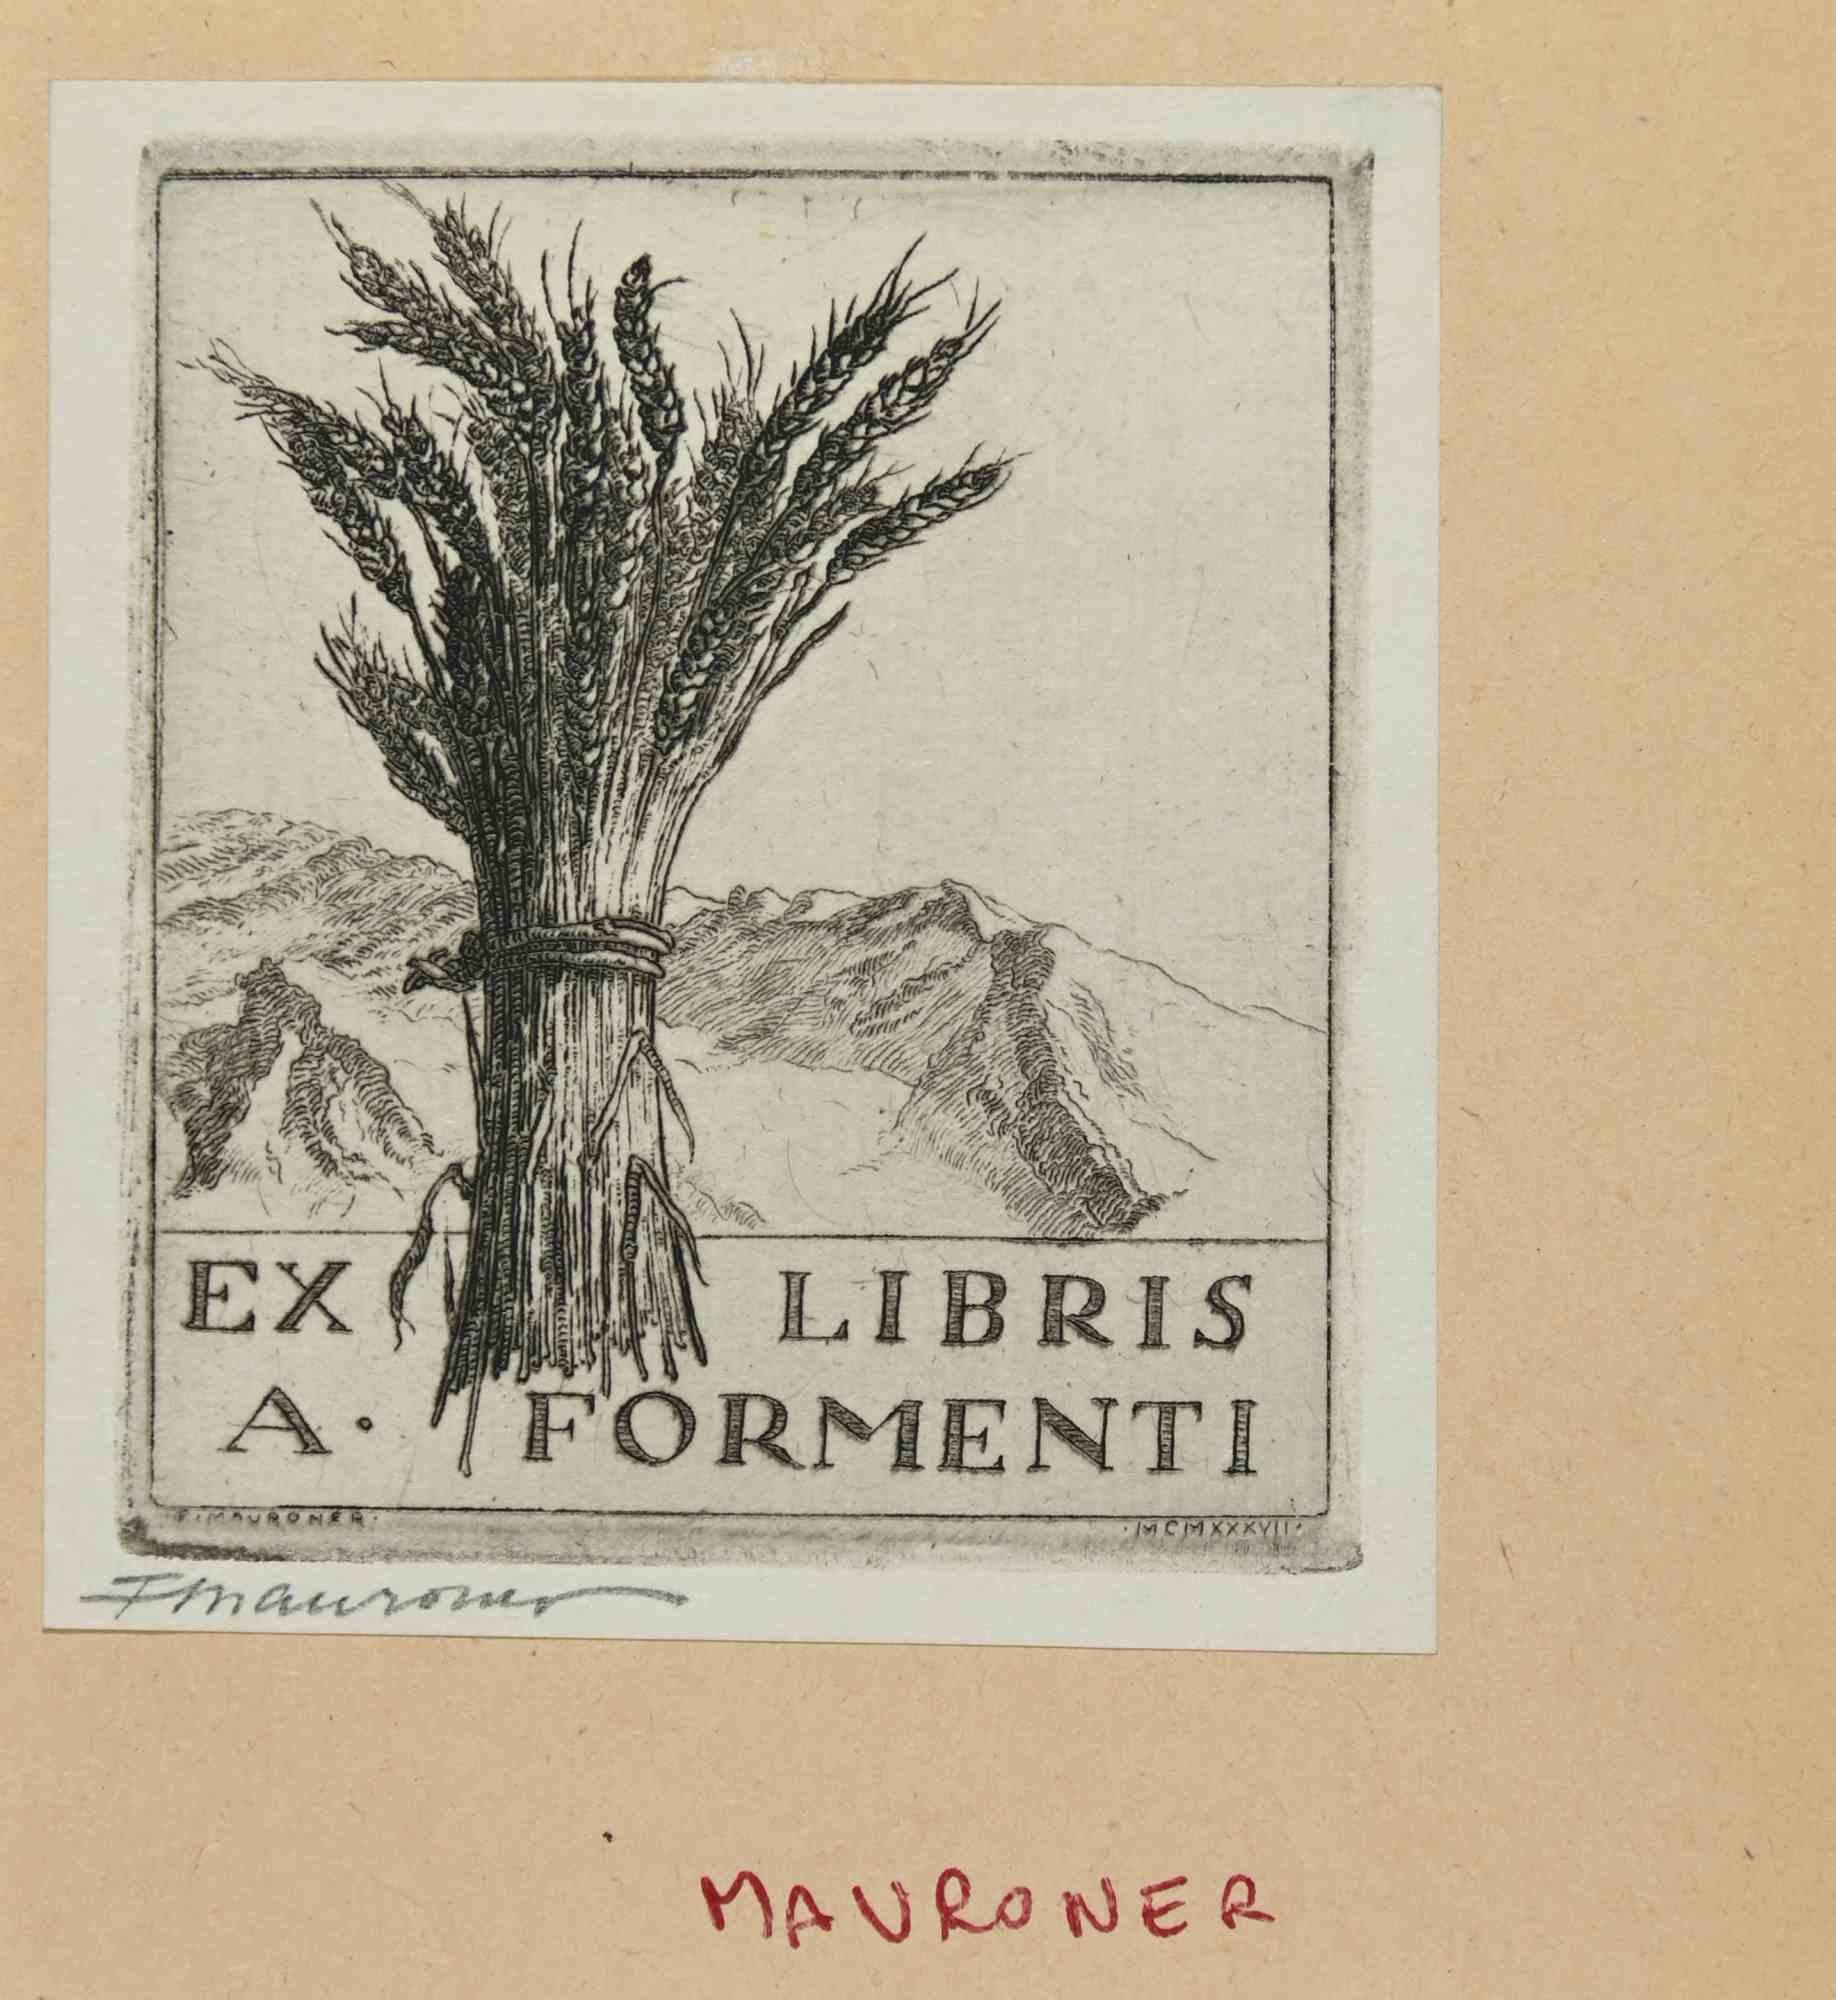 Ex Libris -A. Formenti ist ein Kunstwerk, das 1937 von dem italienischen Künstler Fabio Mauroner (1884-1947) geschaffen wurde.

Radierungsdruck auf Elfenbeinpapier. Handsigniert am linken Rand und datiert "MCMXXXVII", in der rechten Ecke.

Das Werk